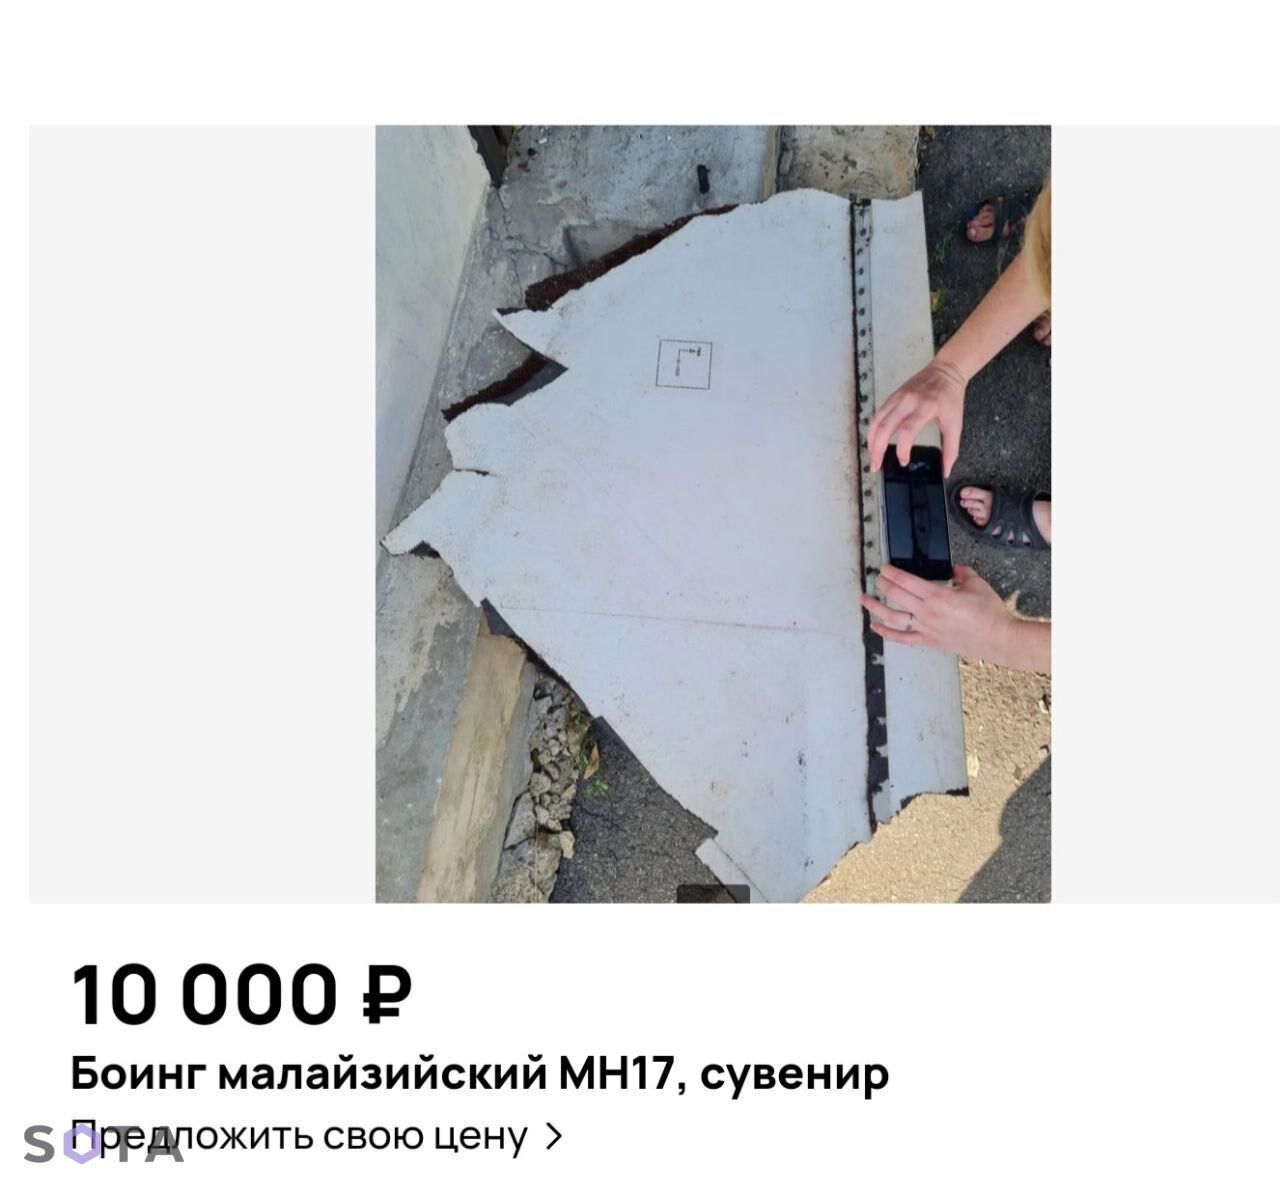 "Сувенир из Амстердама": житель РФ продает на интернет-аукционе фрагмент сбитого малайзийского Боинга MH-17. Фото